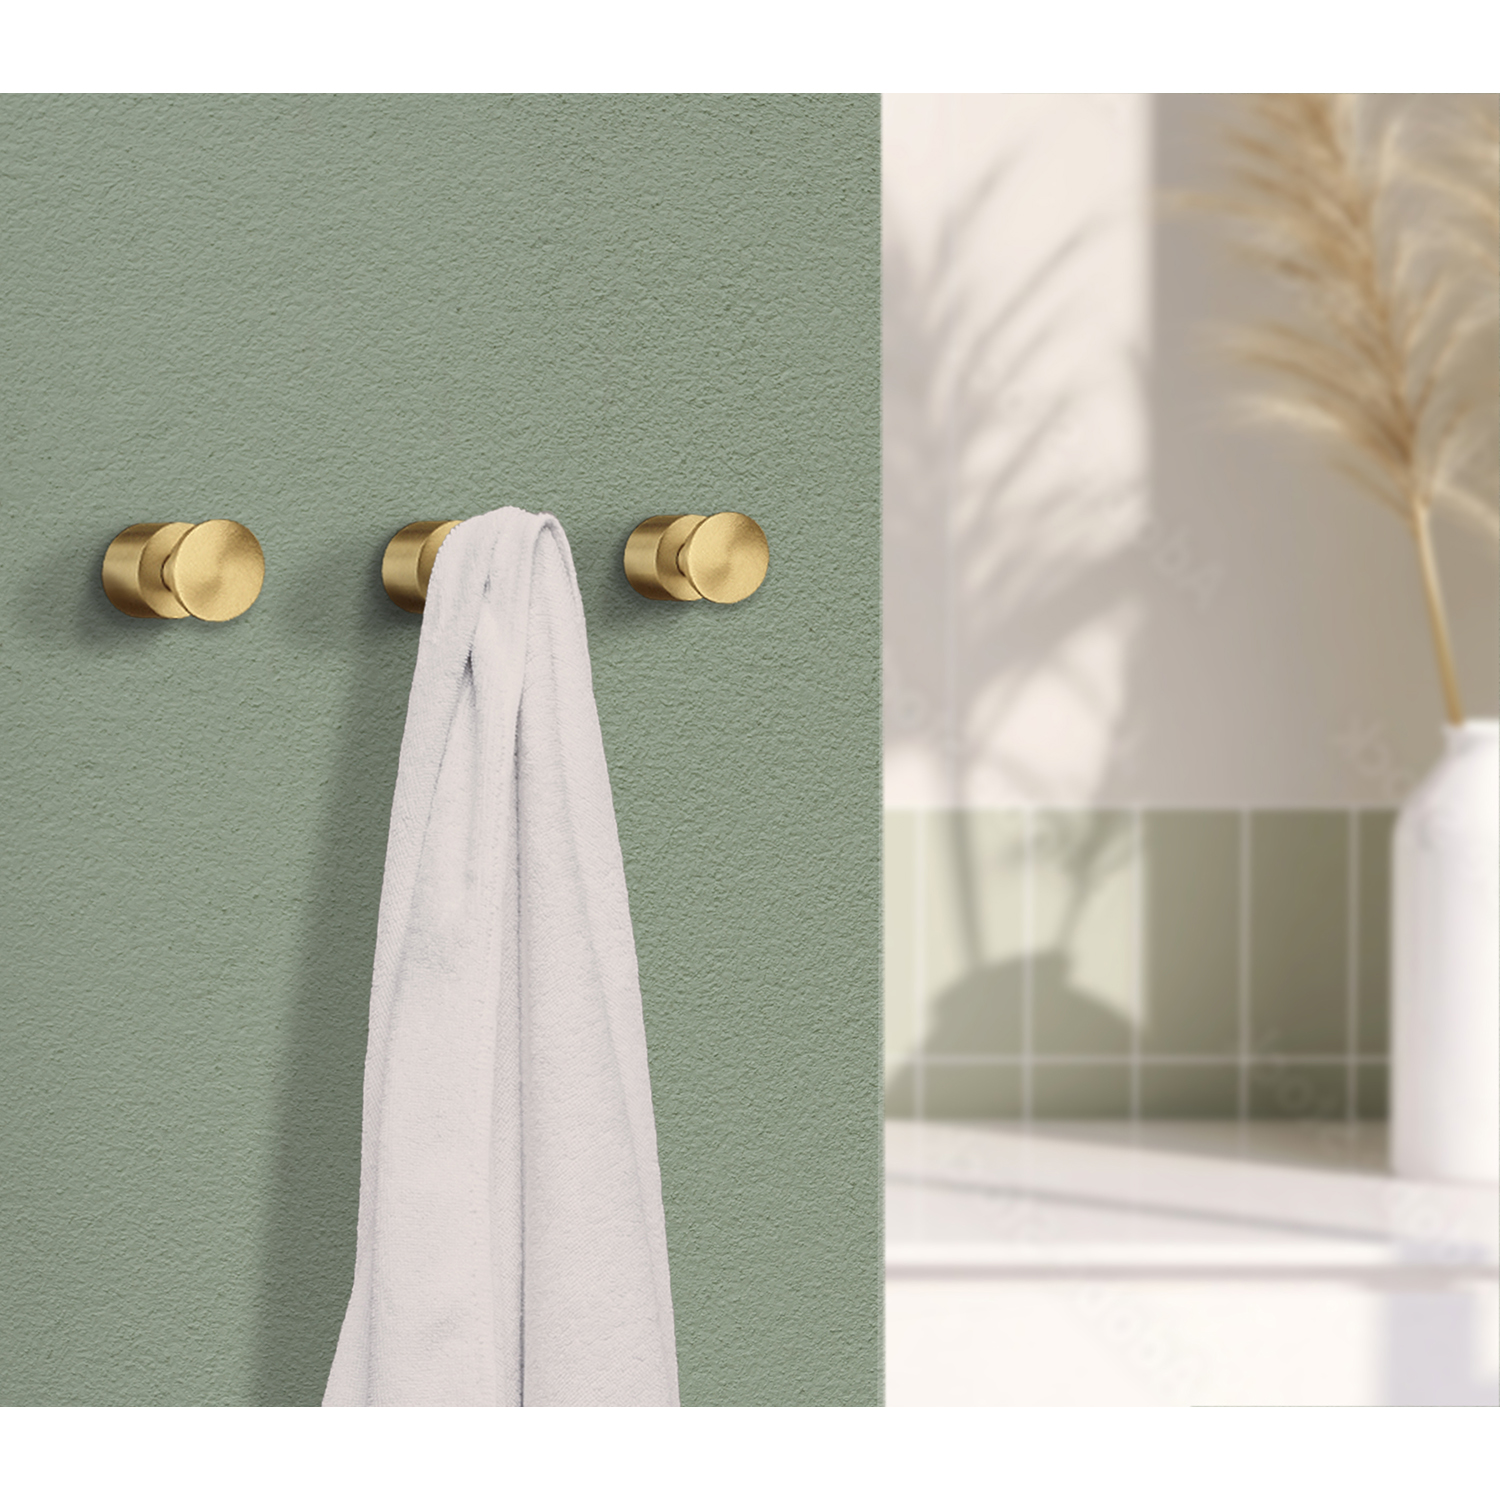 Gancho toallero de latón cepillado Smedbo Home Series Accesorios de baño